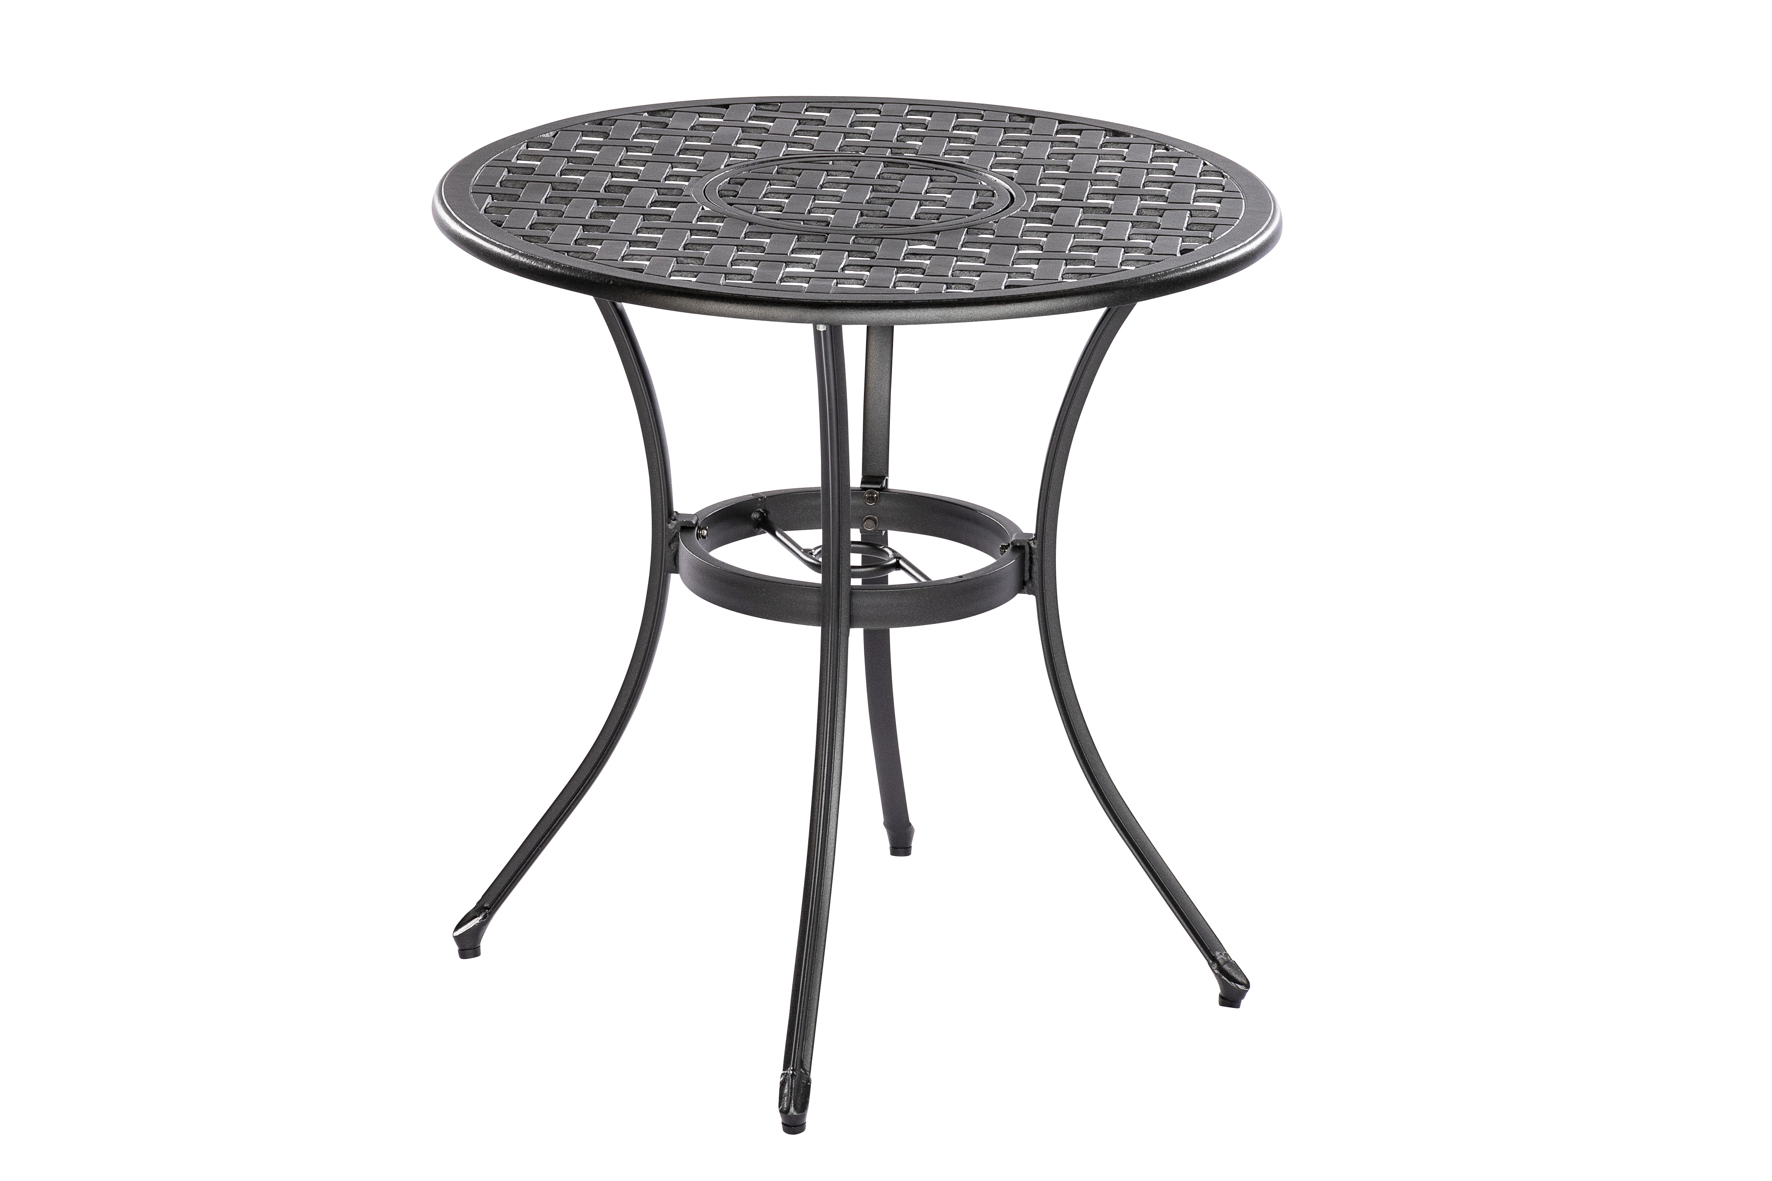 Tisch RHODOS 70cm rund, Aluguss graphit, mit Eiskübel